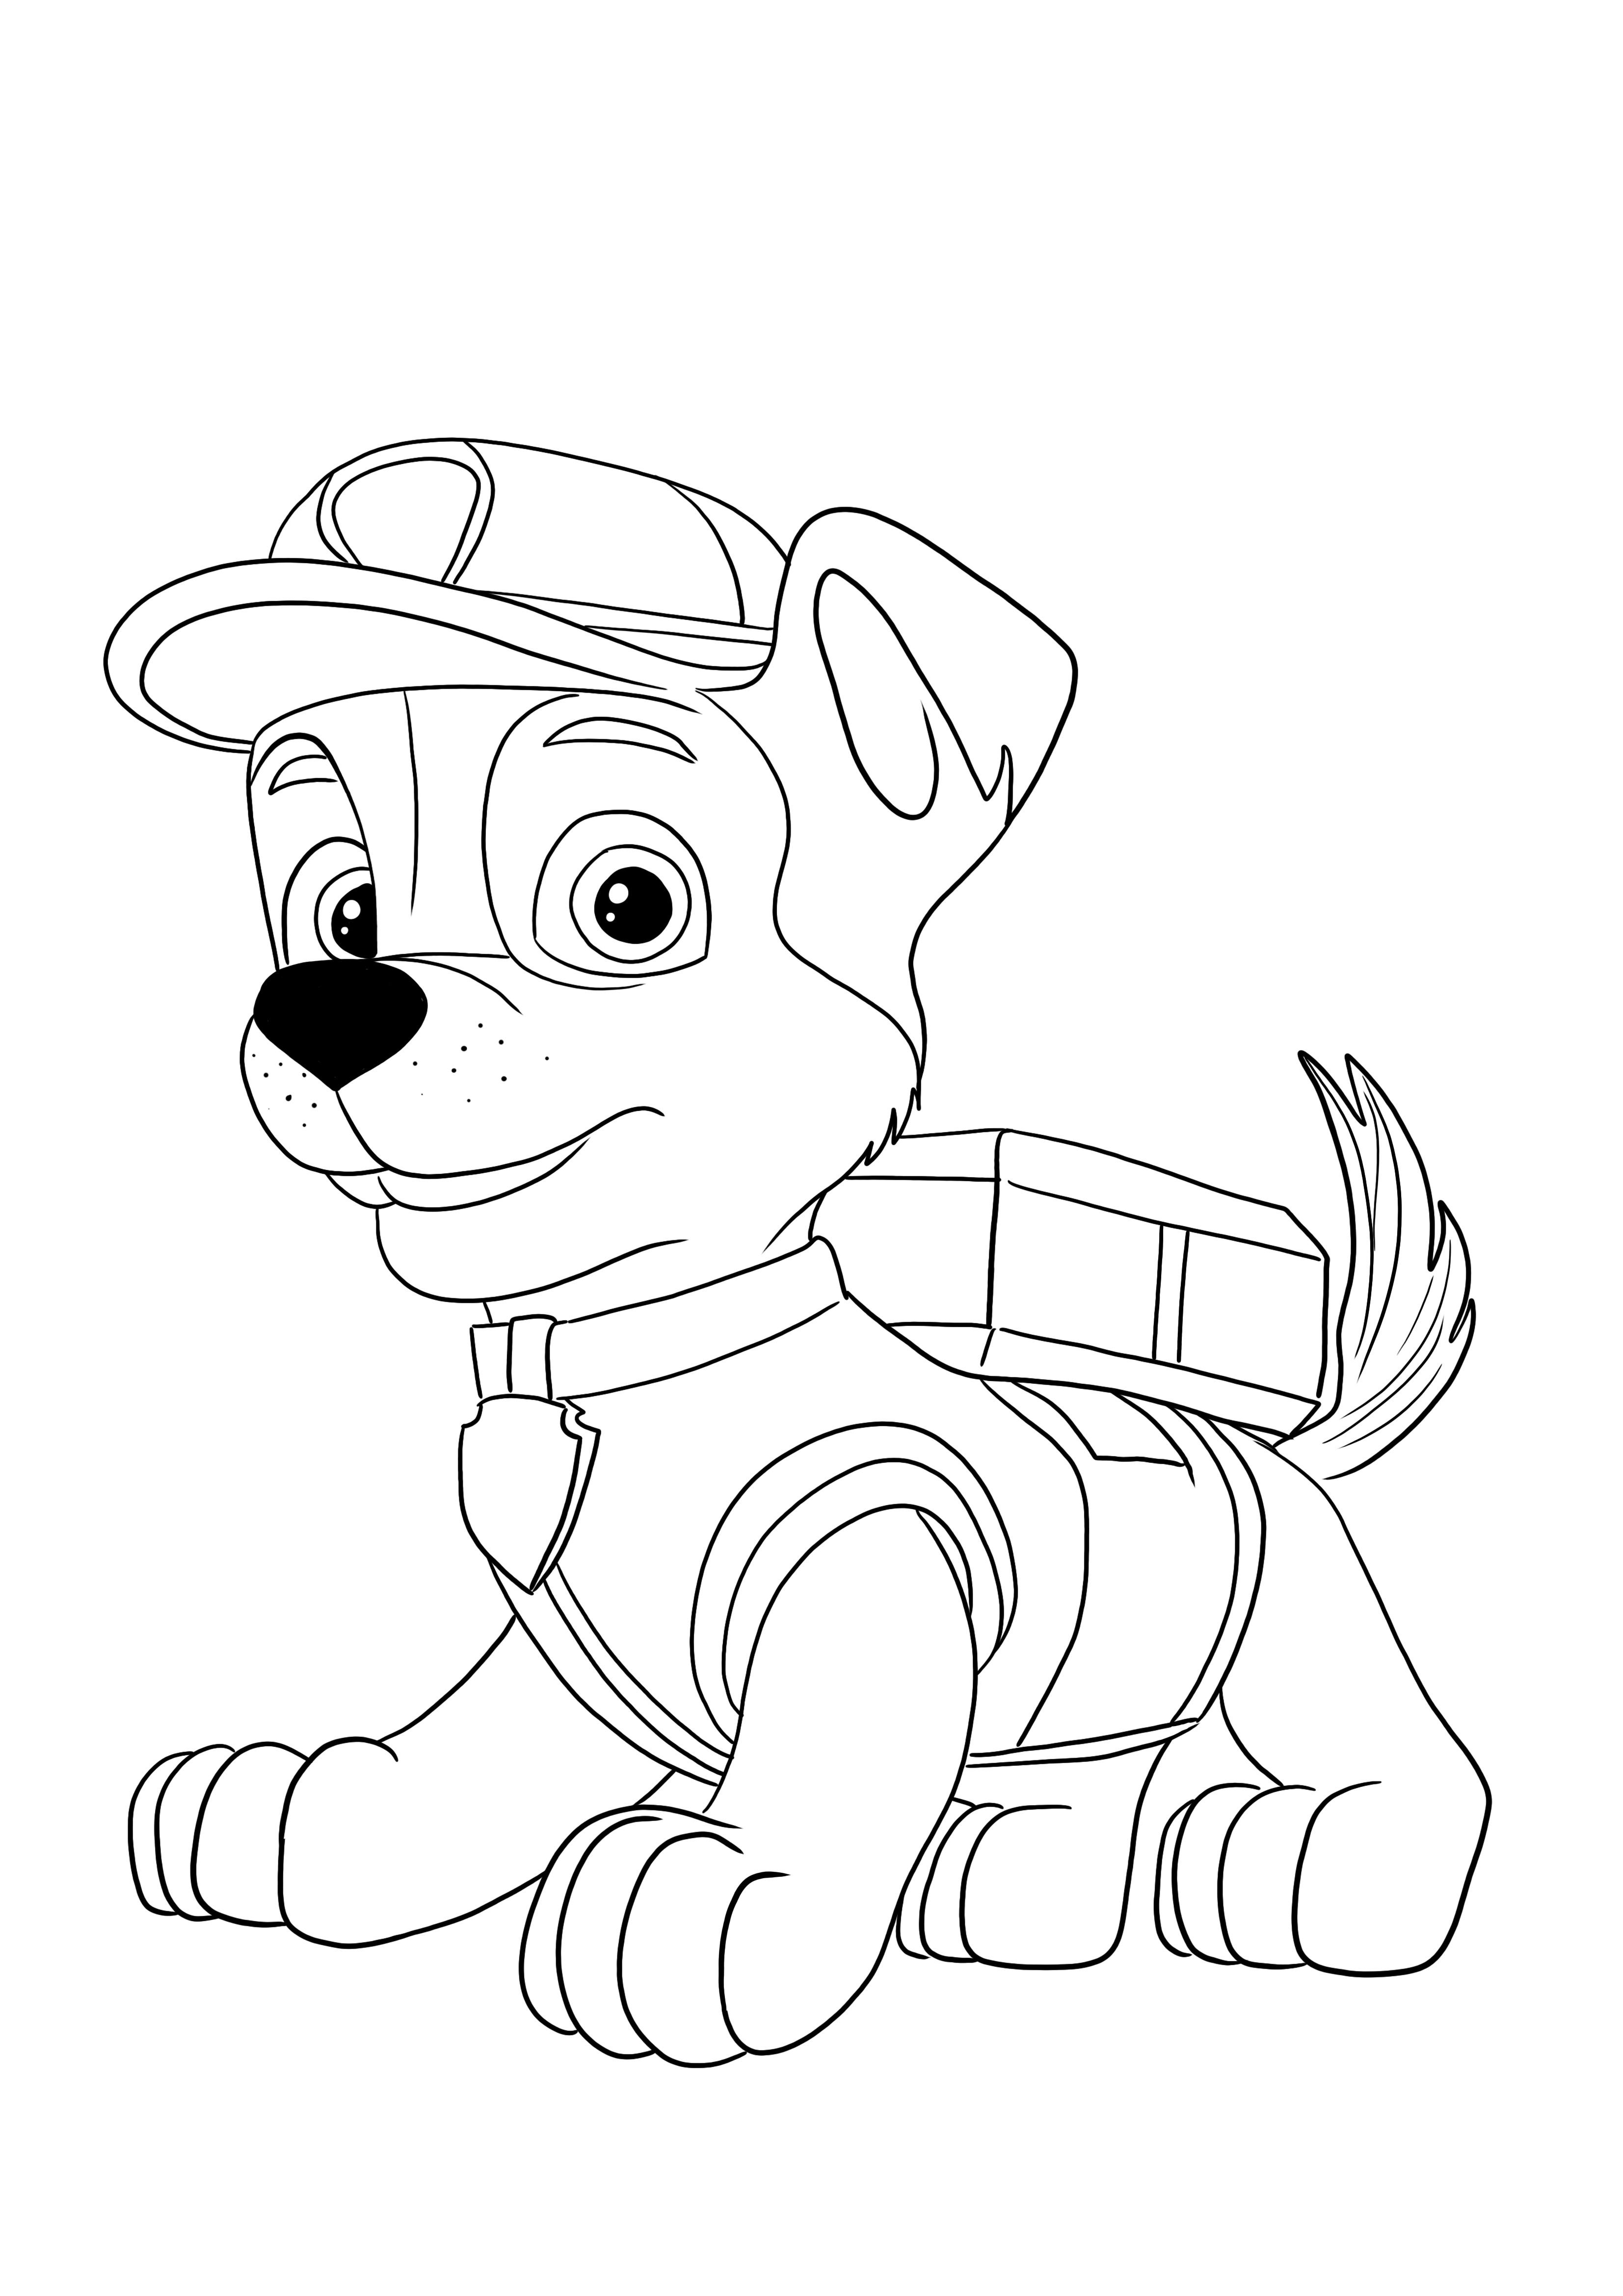 Imagen de Rocky de la patrulla canina para imprimir y colorear gratis para niños